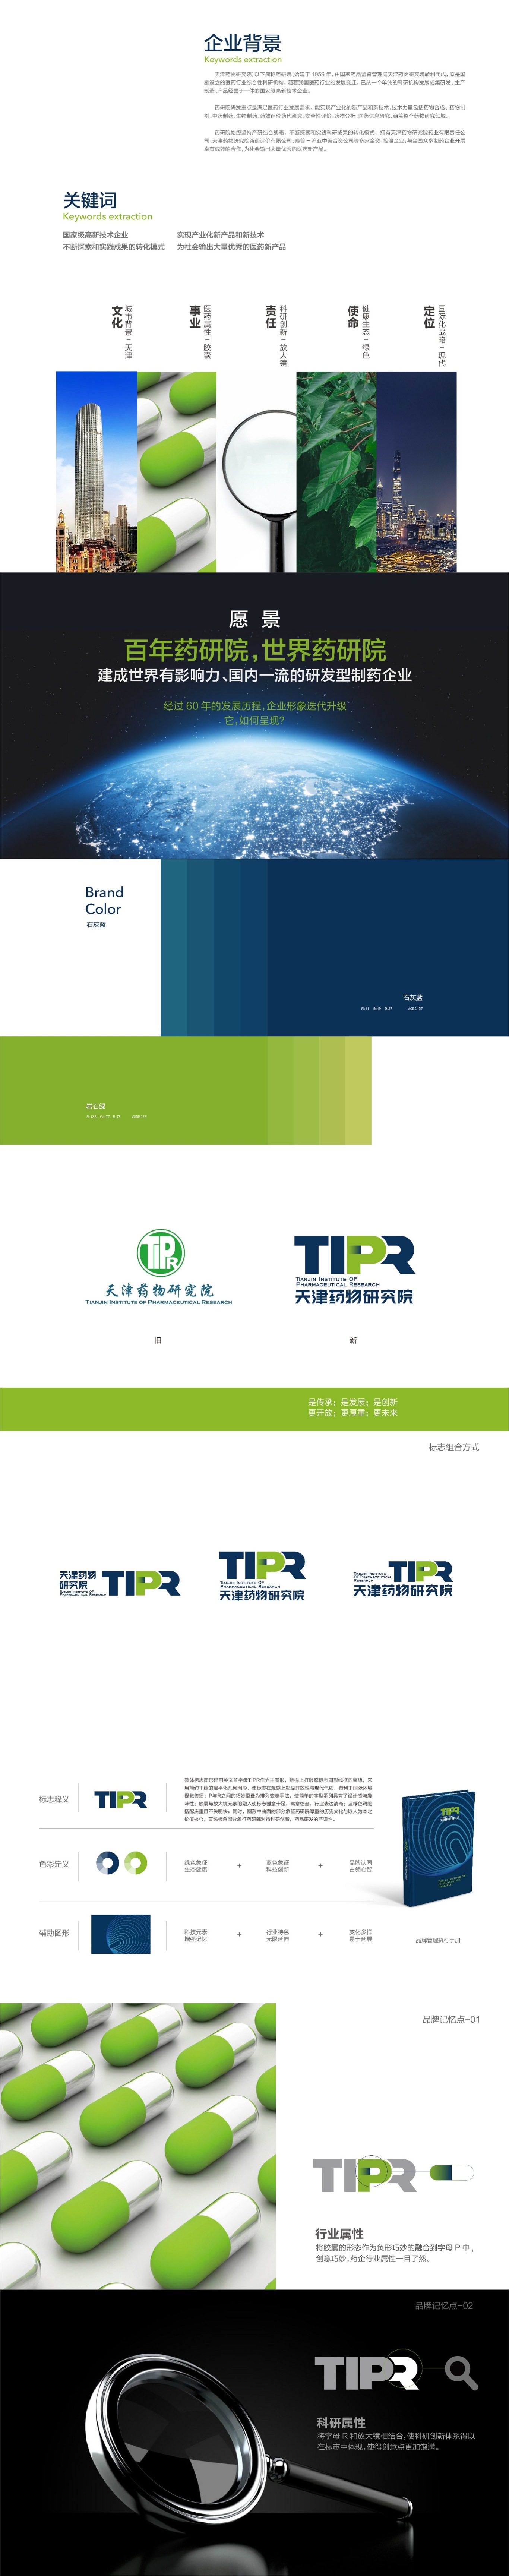 天津药物研究院品牌形象升级设计图0